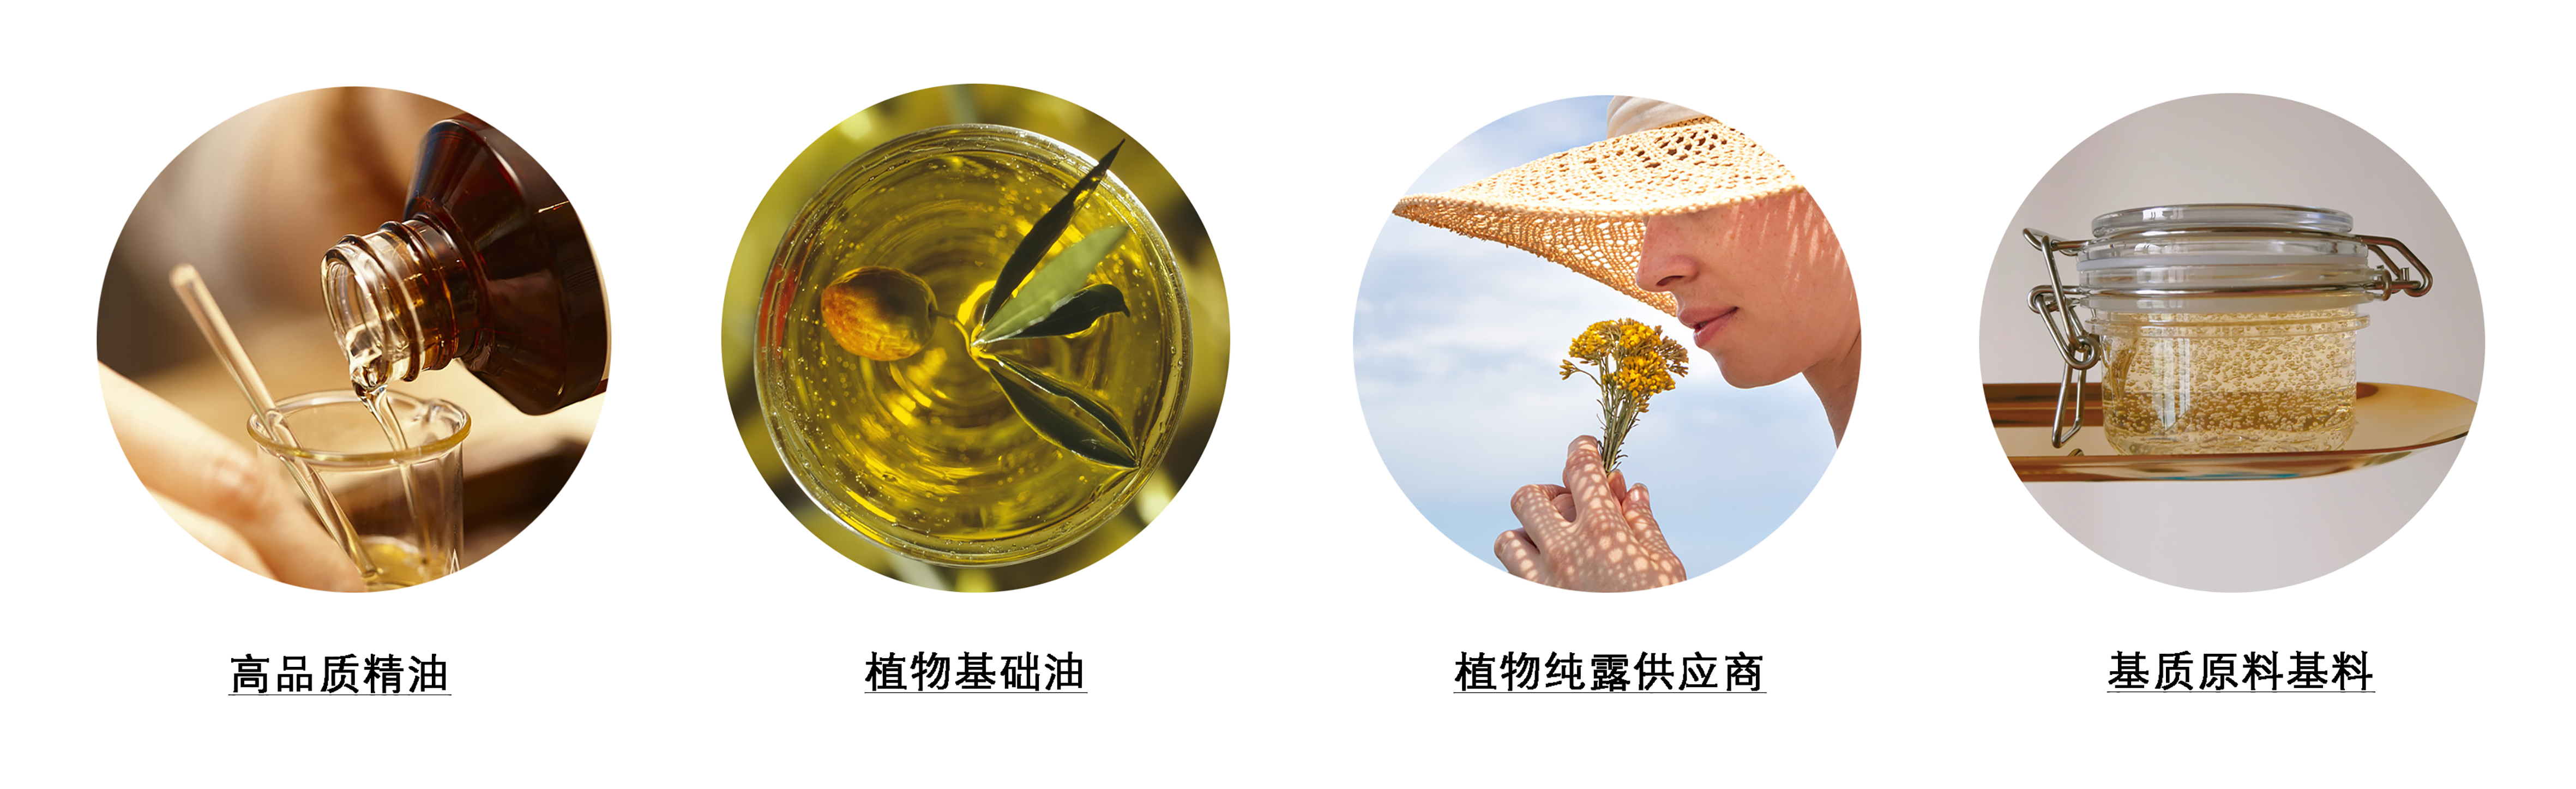 哪里有靠谱的精油供应商高品质纯精油天然植物纯露来YS垣鑫广州靠谱原料商